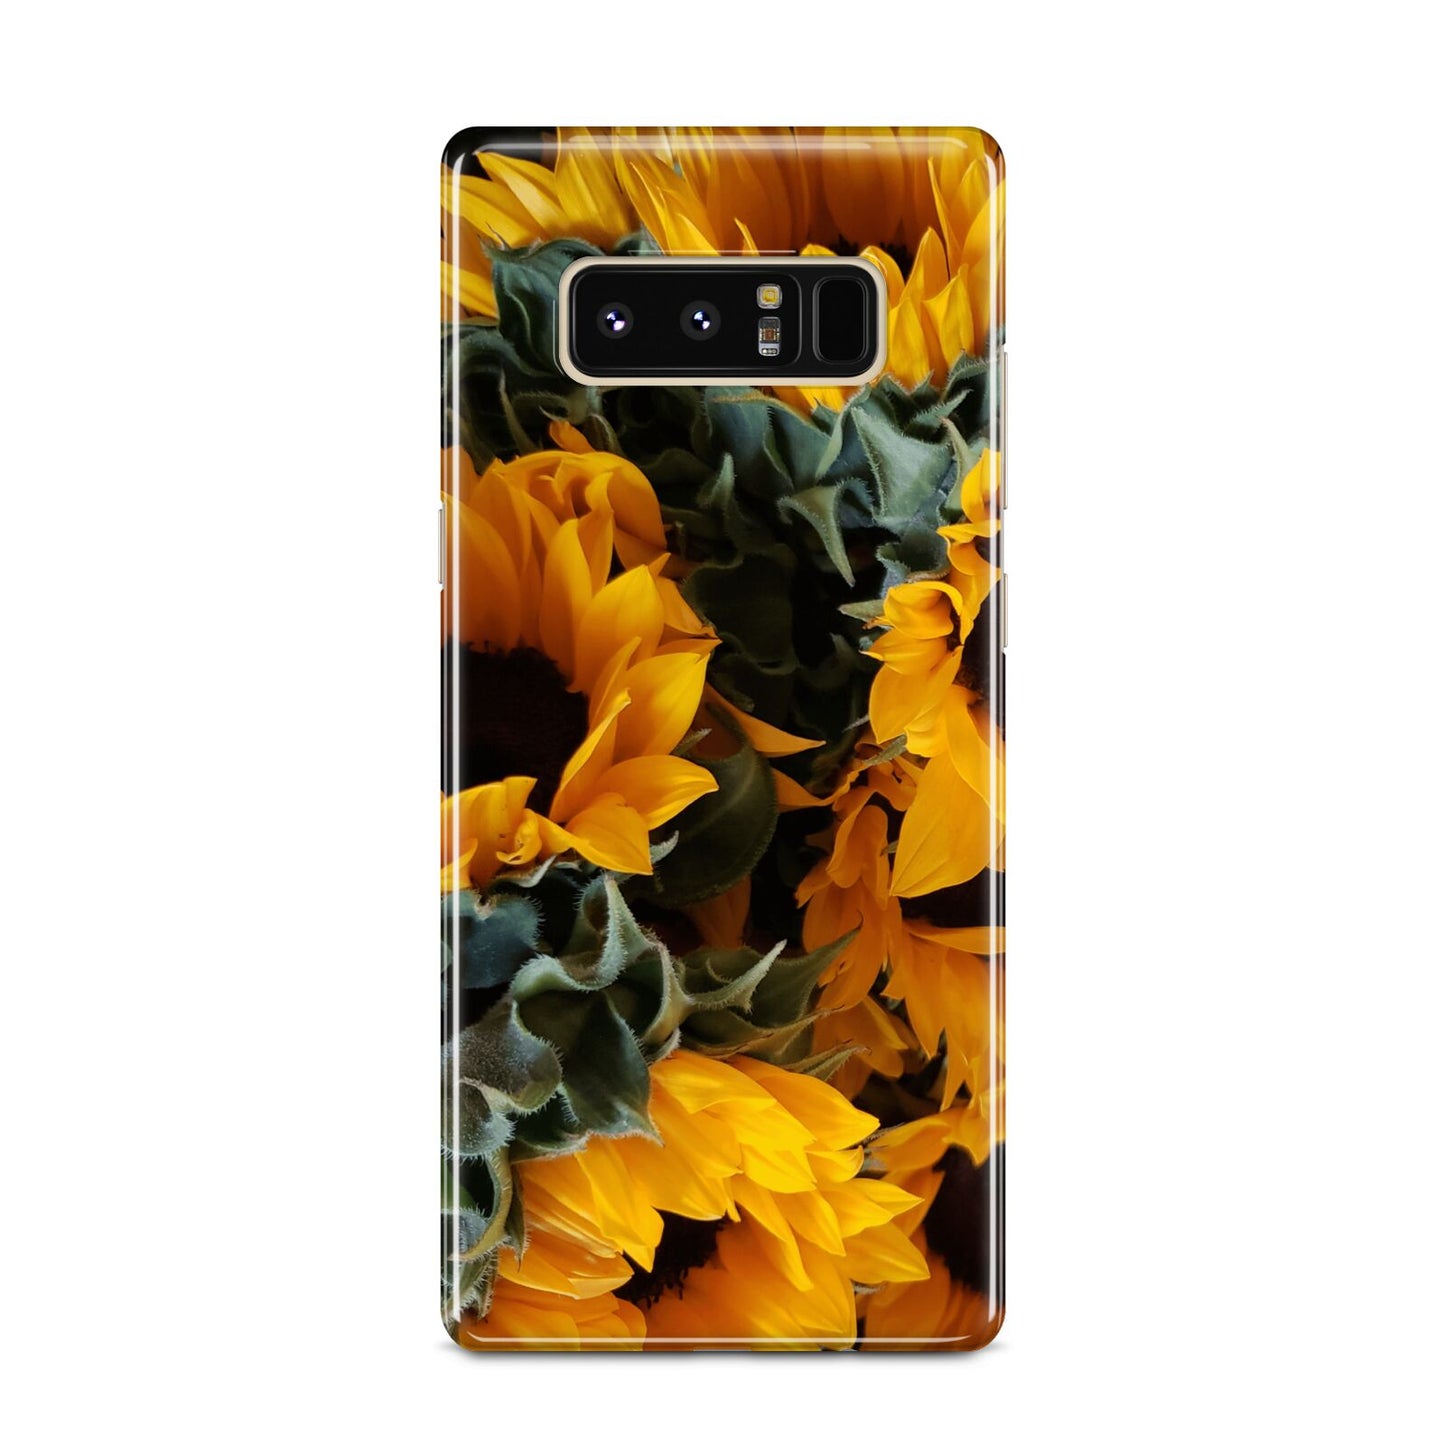 Sunflower Samsung Galaxy Note 8 Case